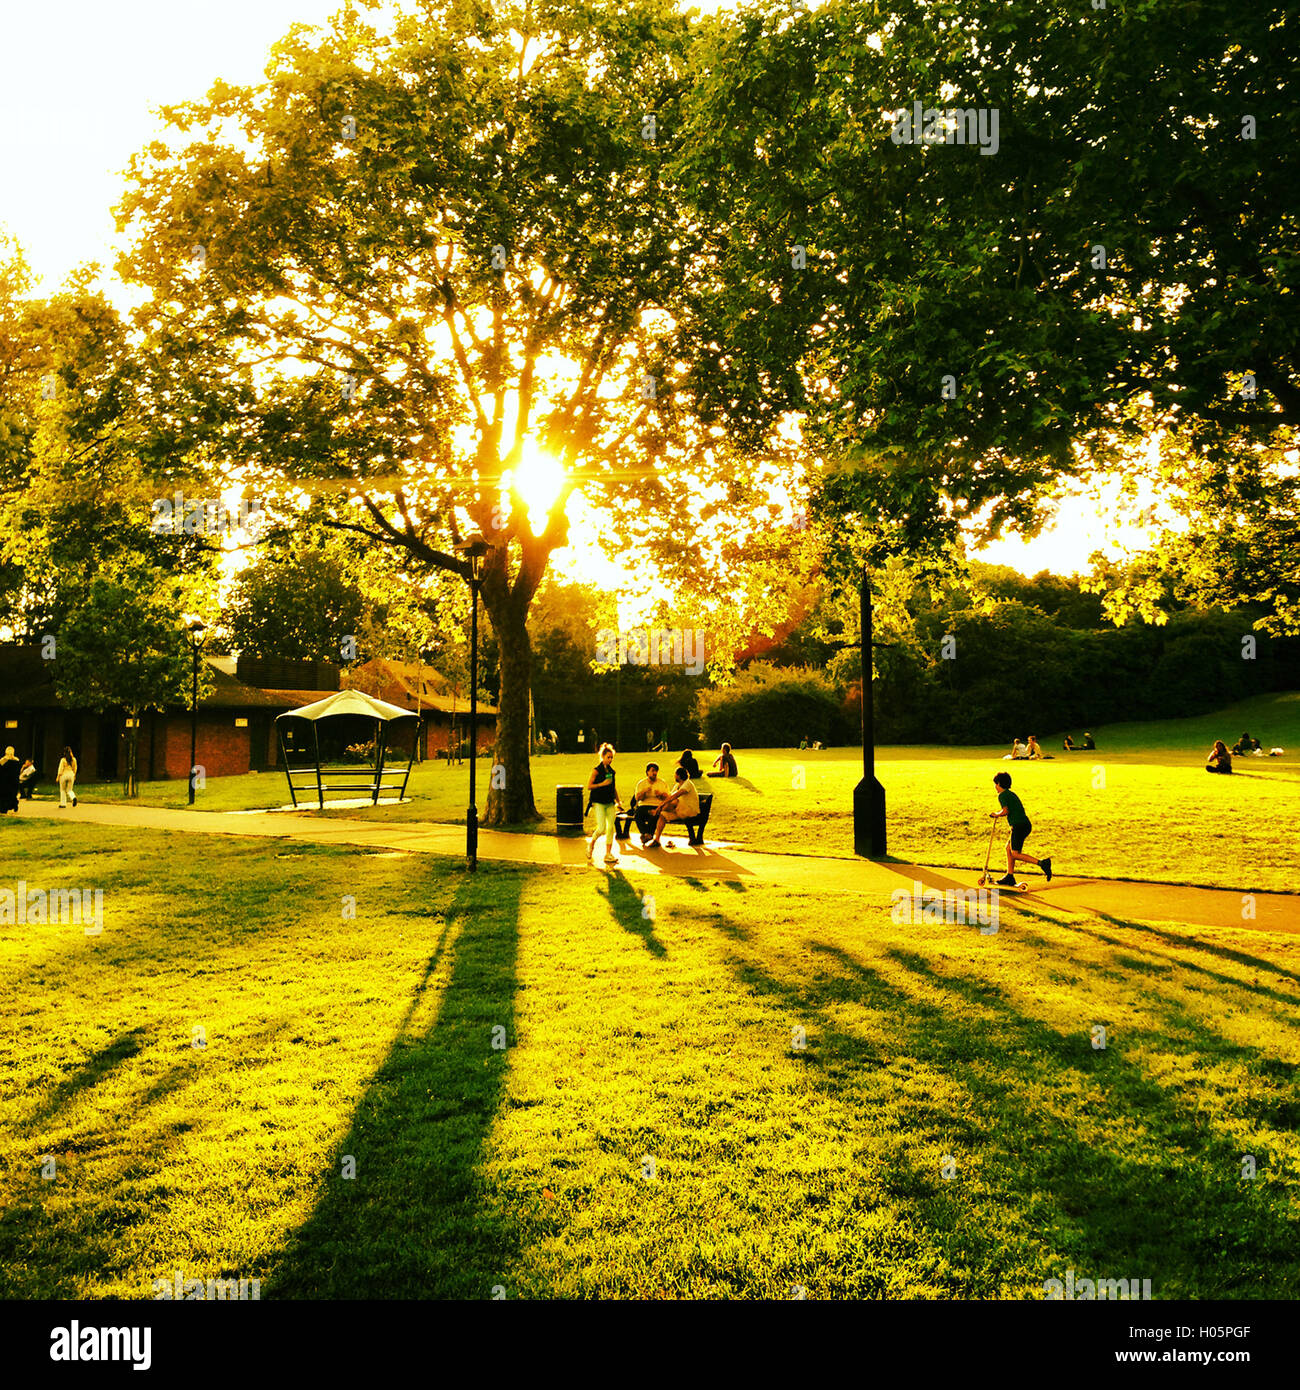 Escena de verano en un parque de Londres a finales del verano de rayas y sombras a través de árboles con gente caminando Foto de stock